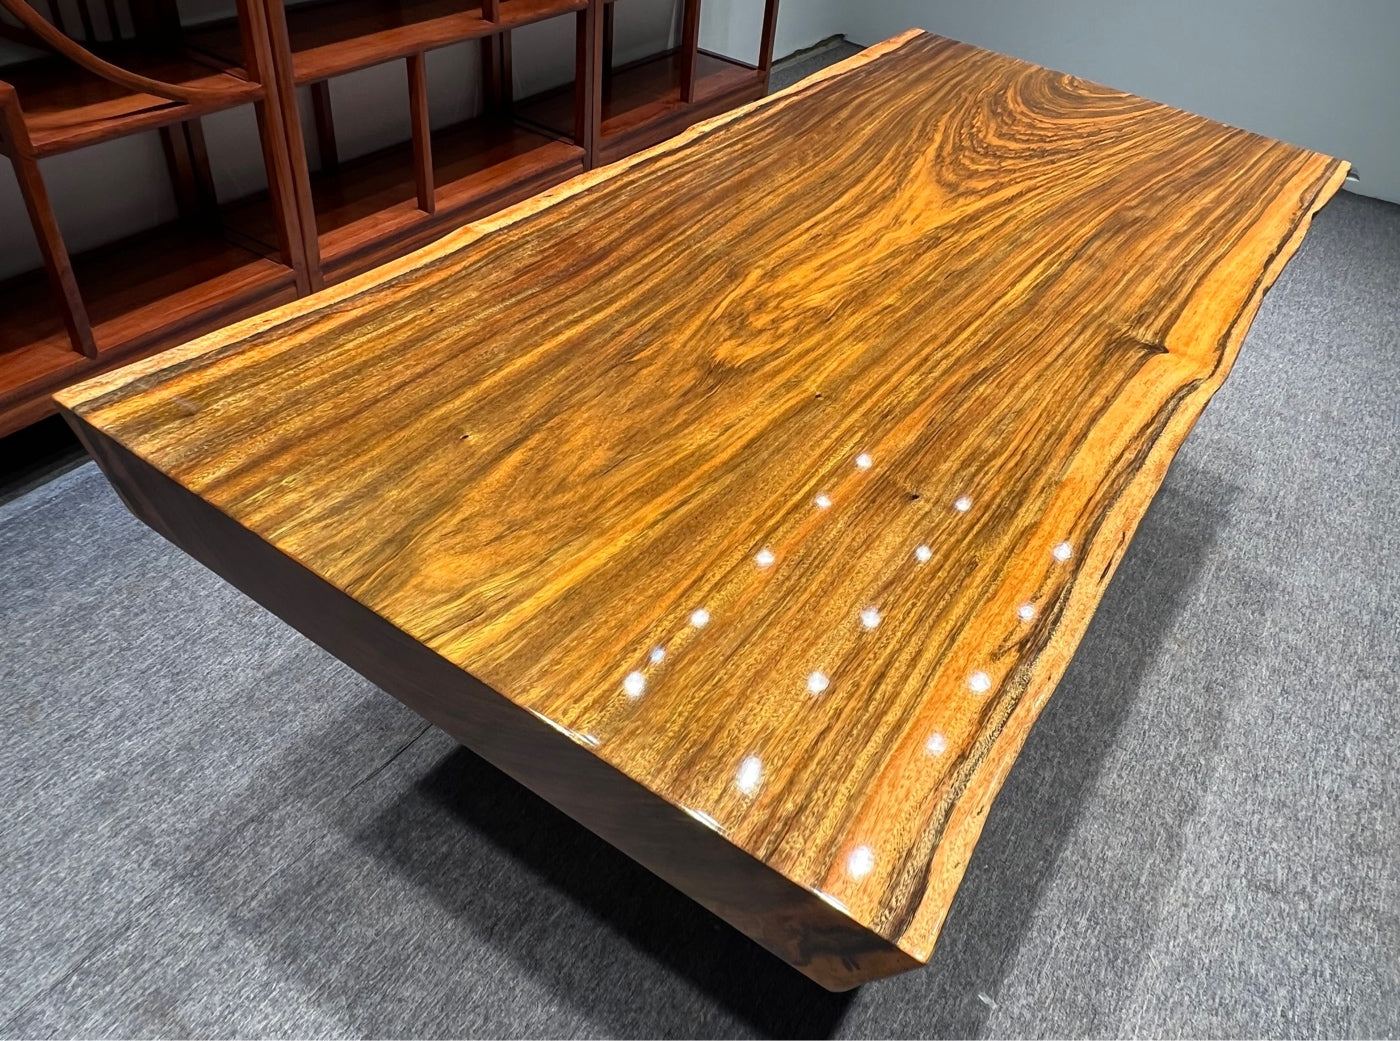 Tali wood wood slab table, Africa wood slab table round, slab table c channel